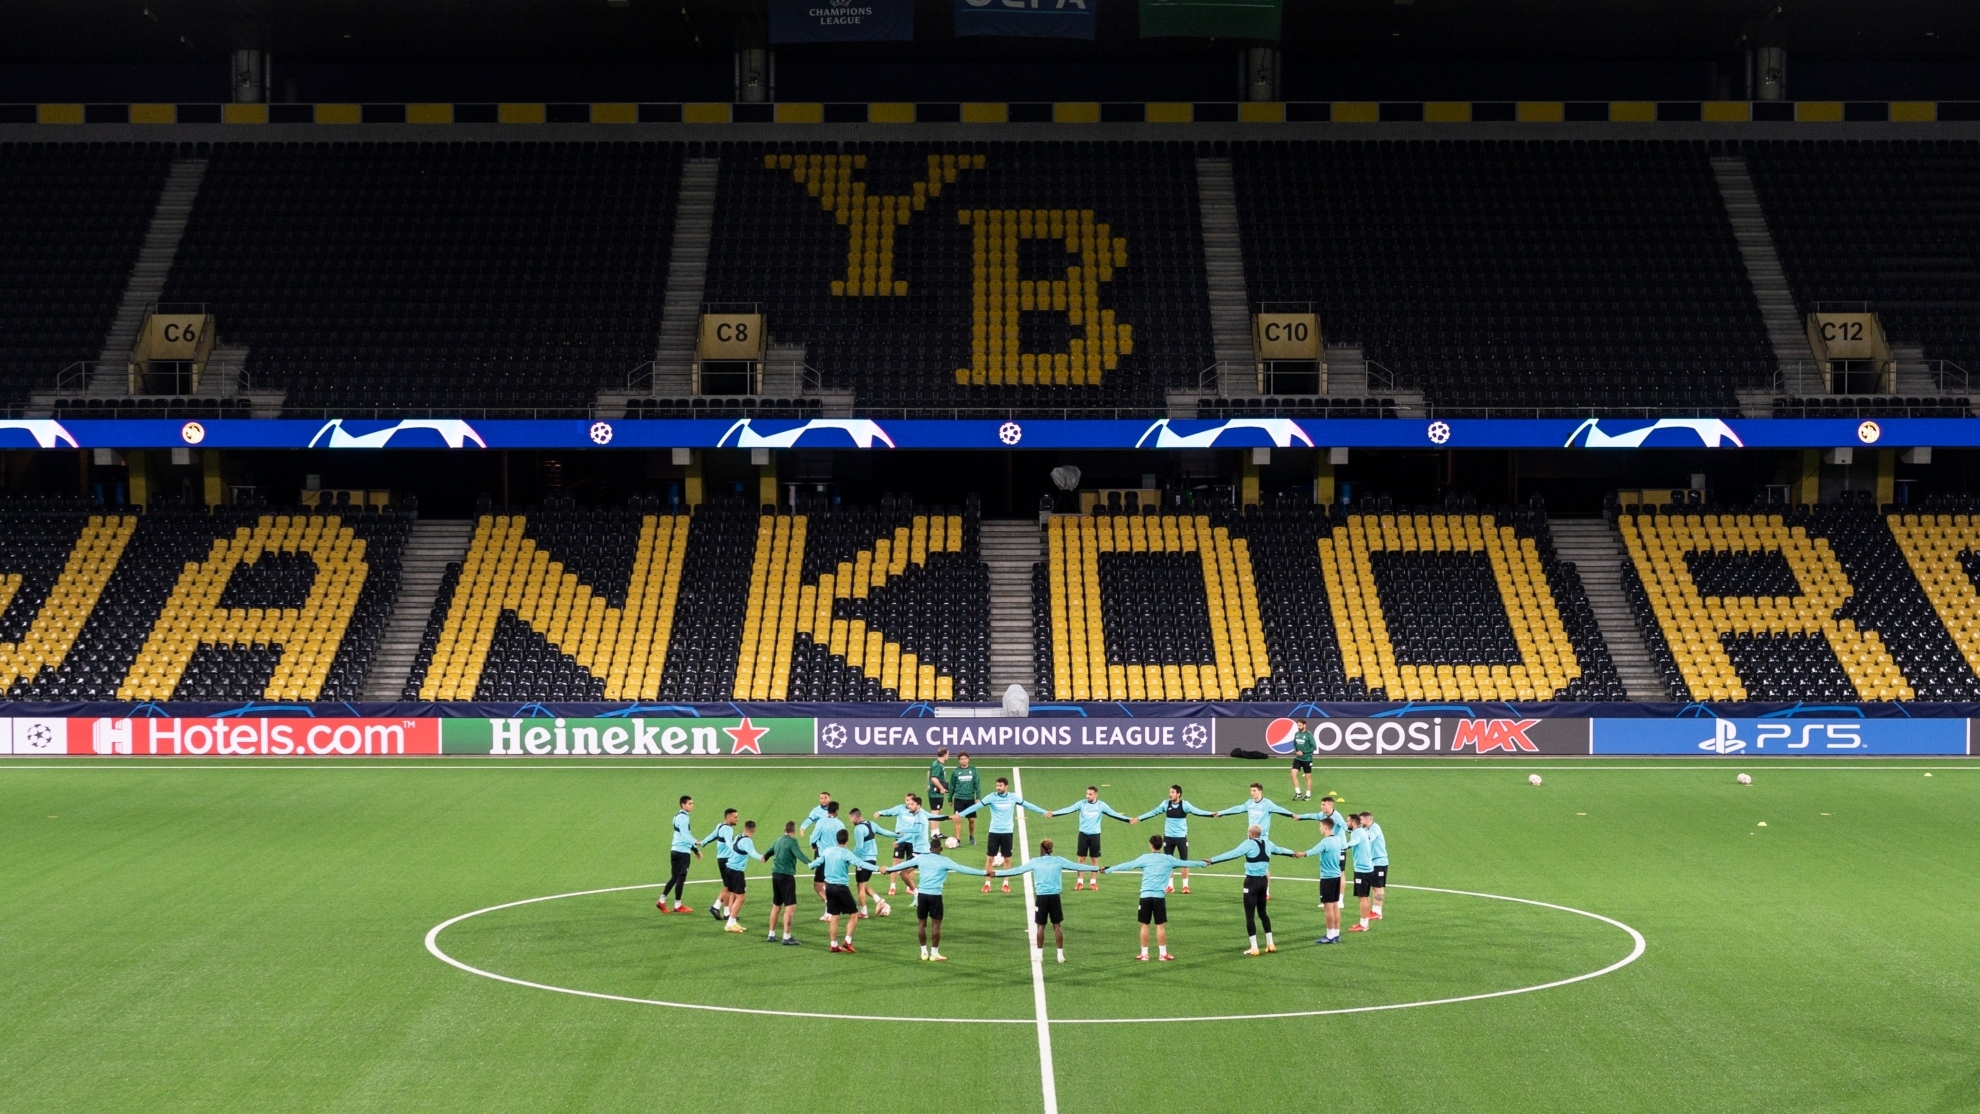 El Villarreal inicia el entrenamiento sobre el csped artificial del estadio Wankdorf, del Young Boys